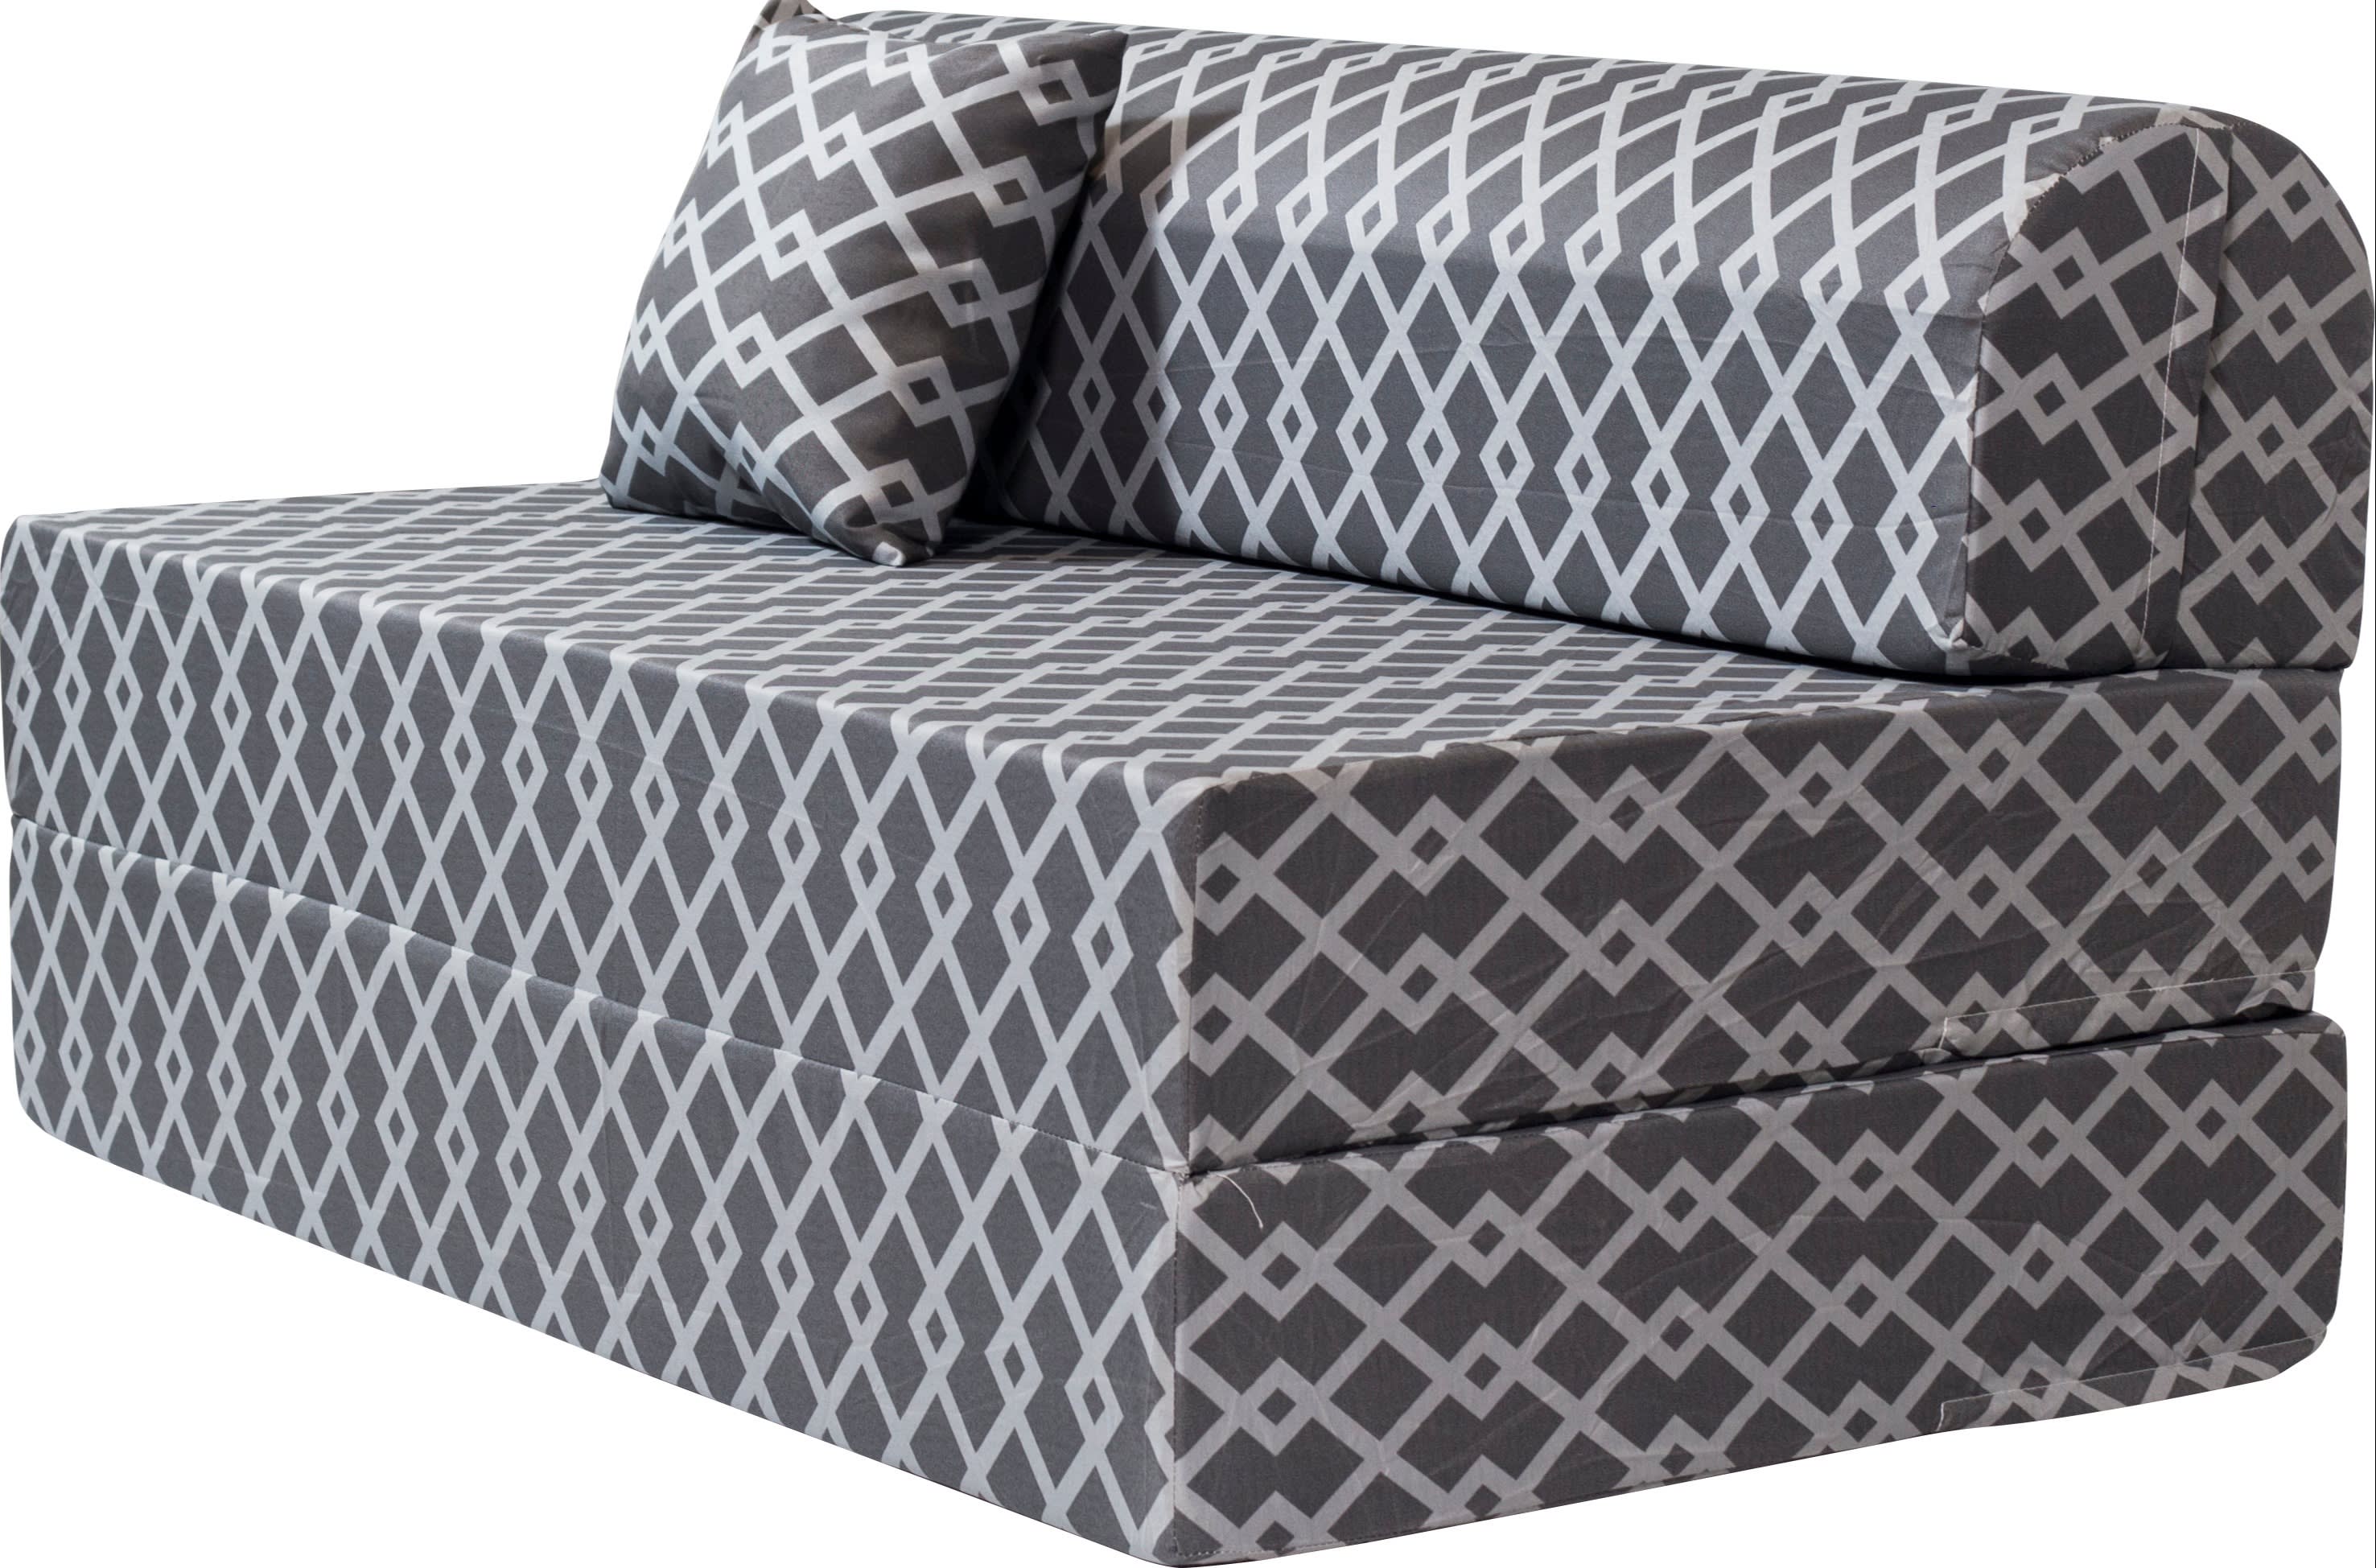 uratex sofa bed queen size price